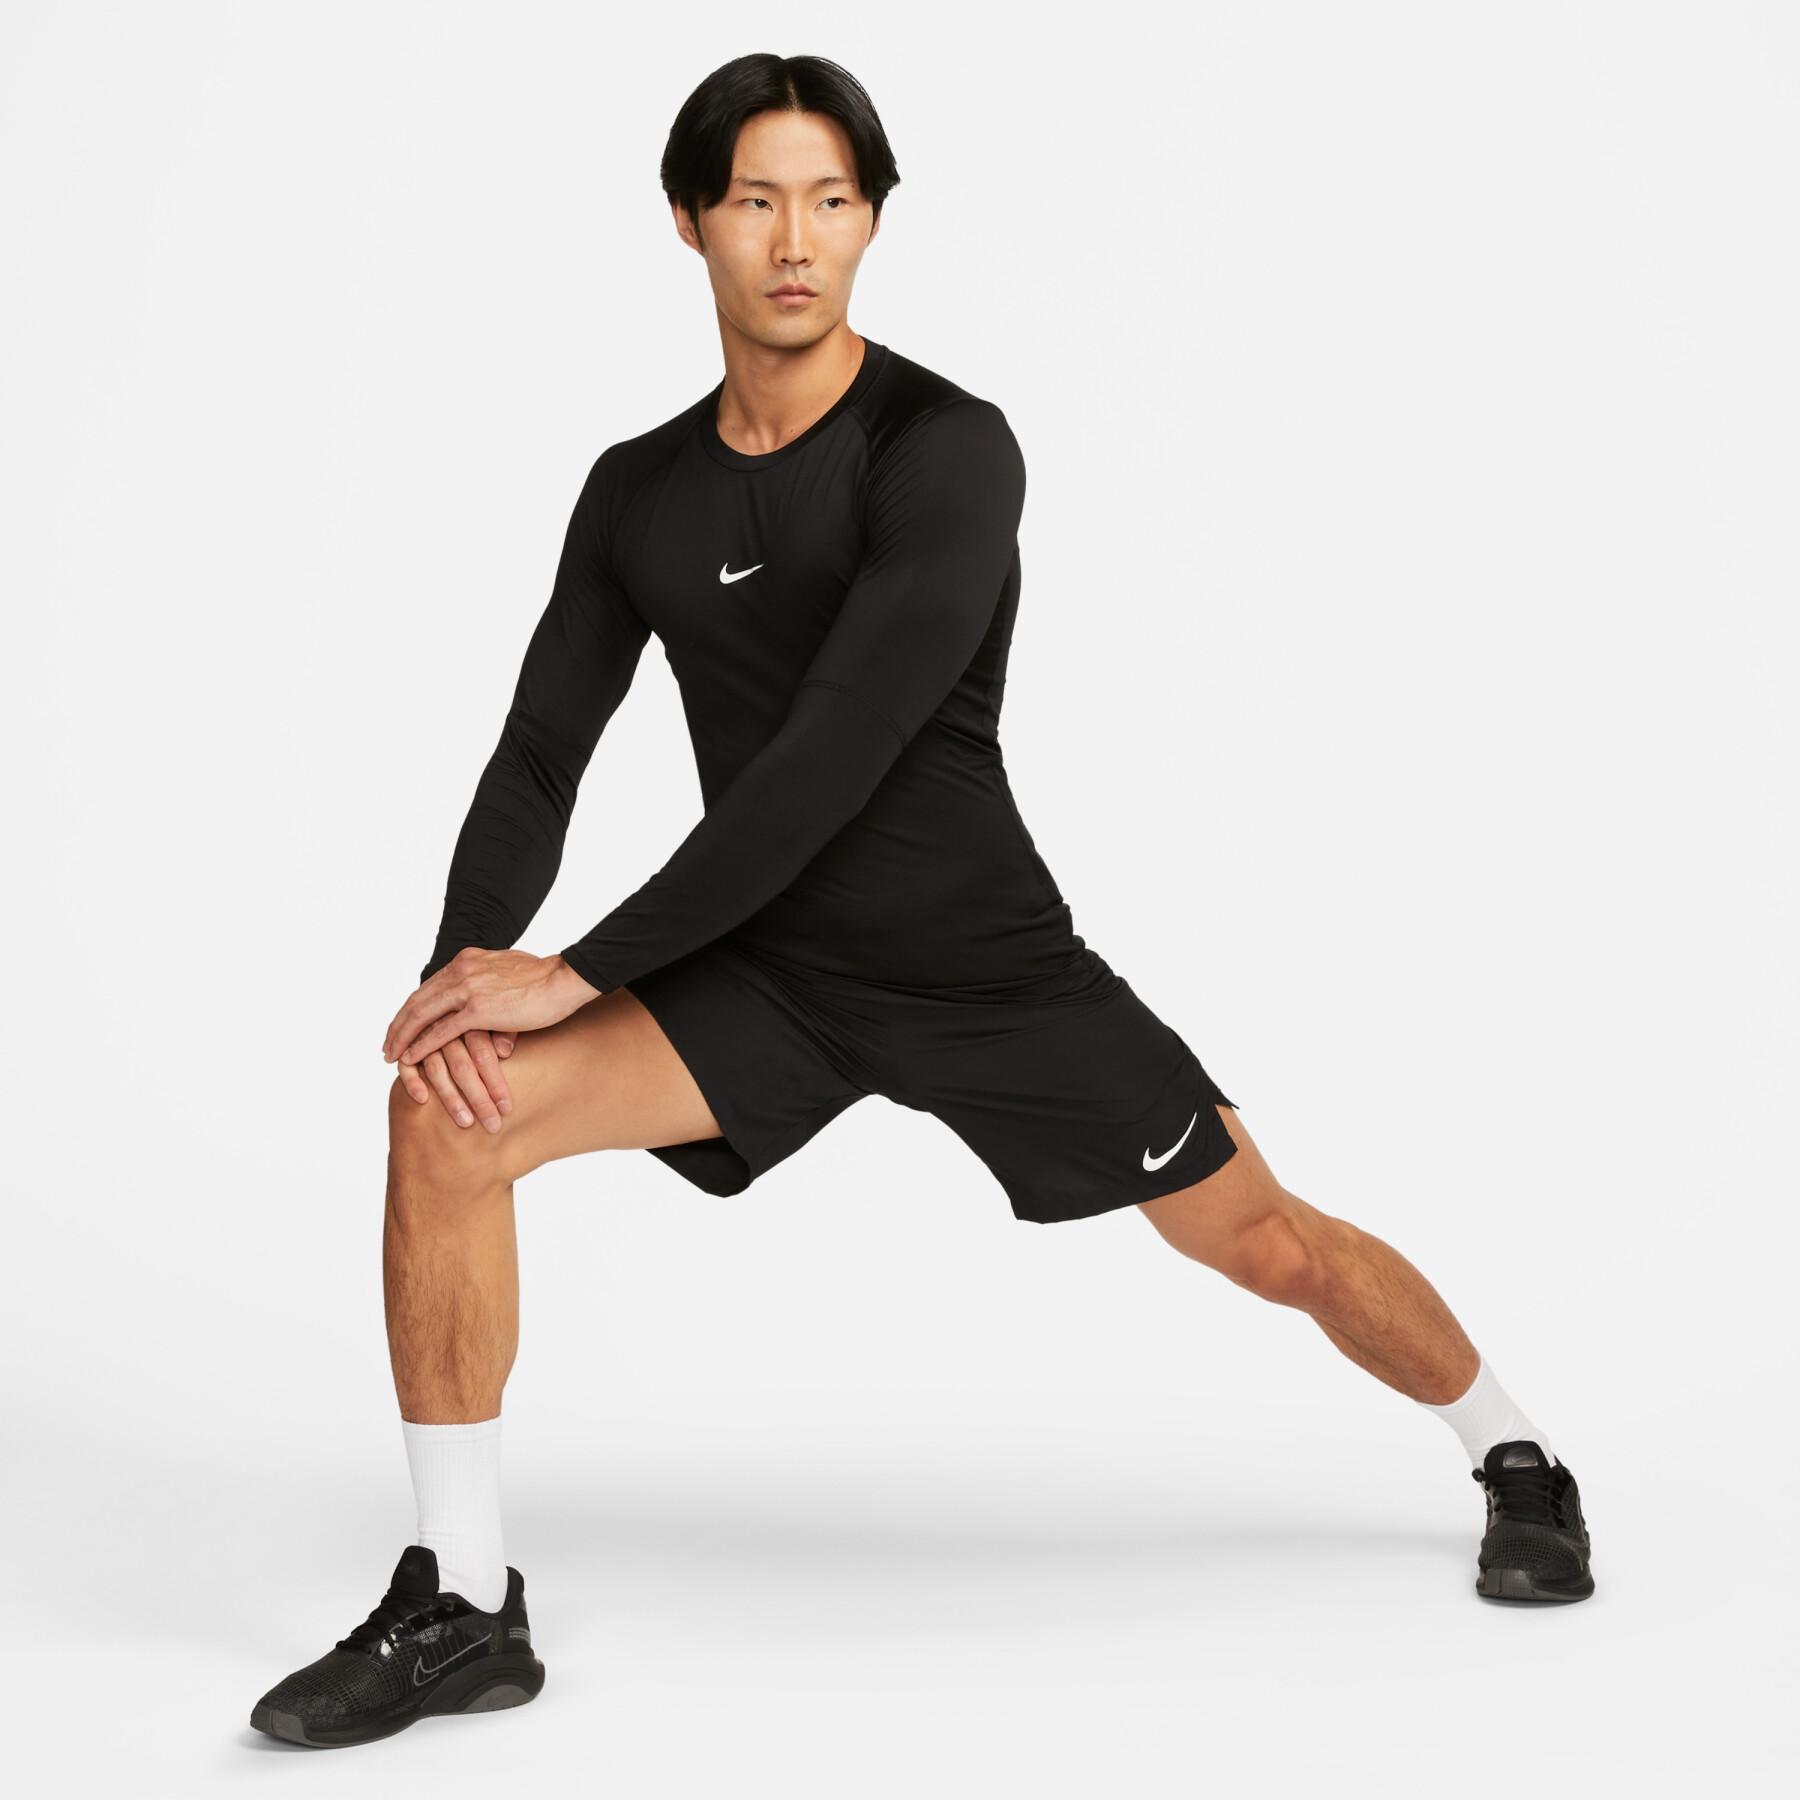 Strakke jersey met lange mouwen Nike Pro Dri-FIT